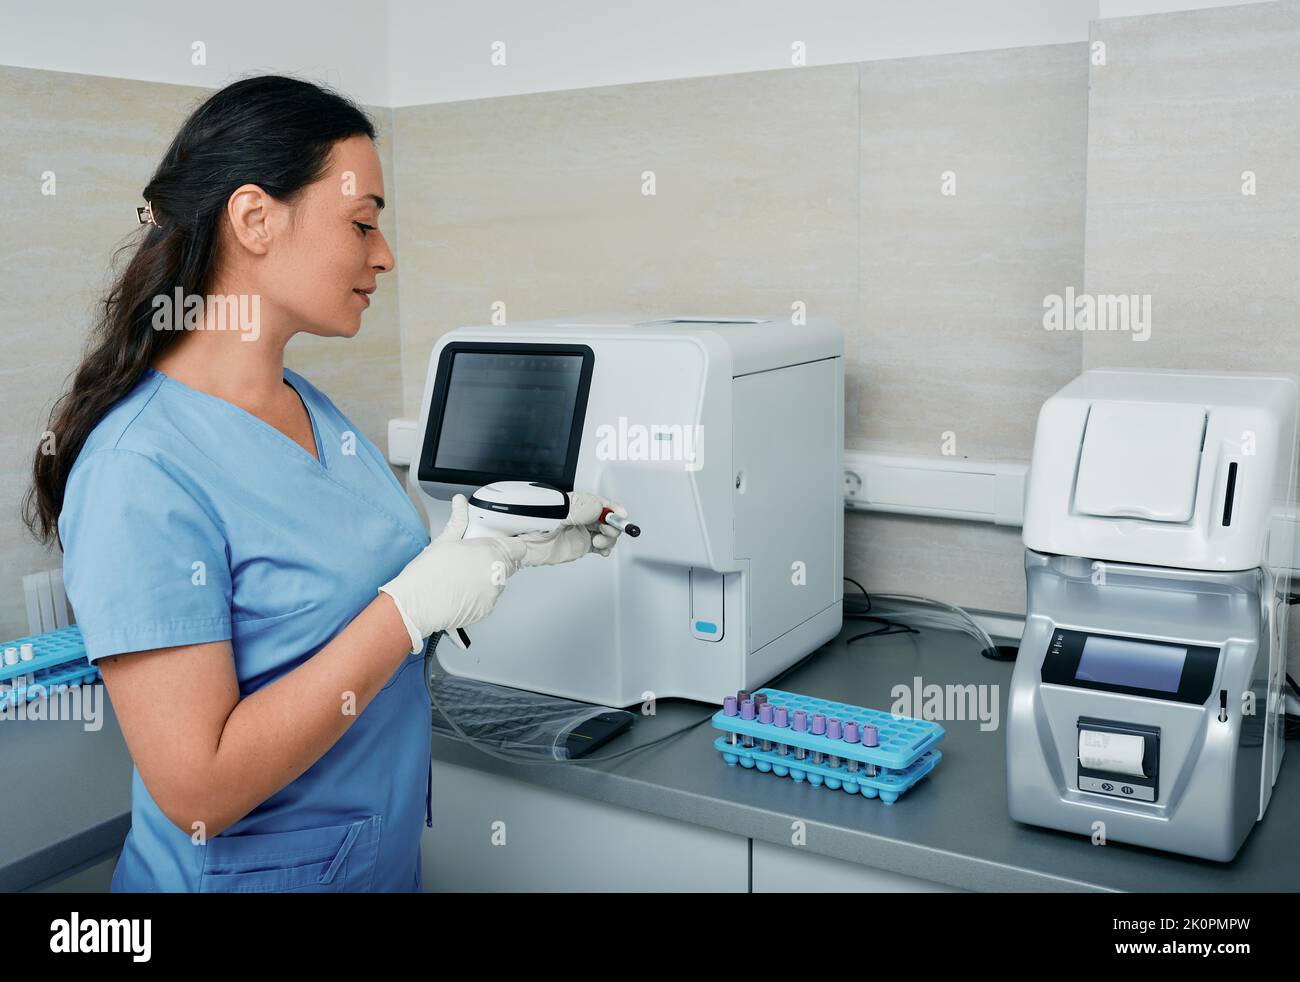 Laborarbeiterin scannt den Barcode des Reagenzschlauchs mit Blut auf ihrem Arbeitsplatz in der Nähe einer medizinischen Forschungsmaschine Stockfoto